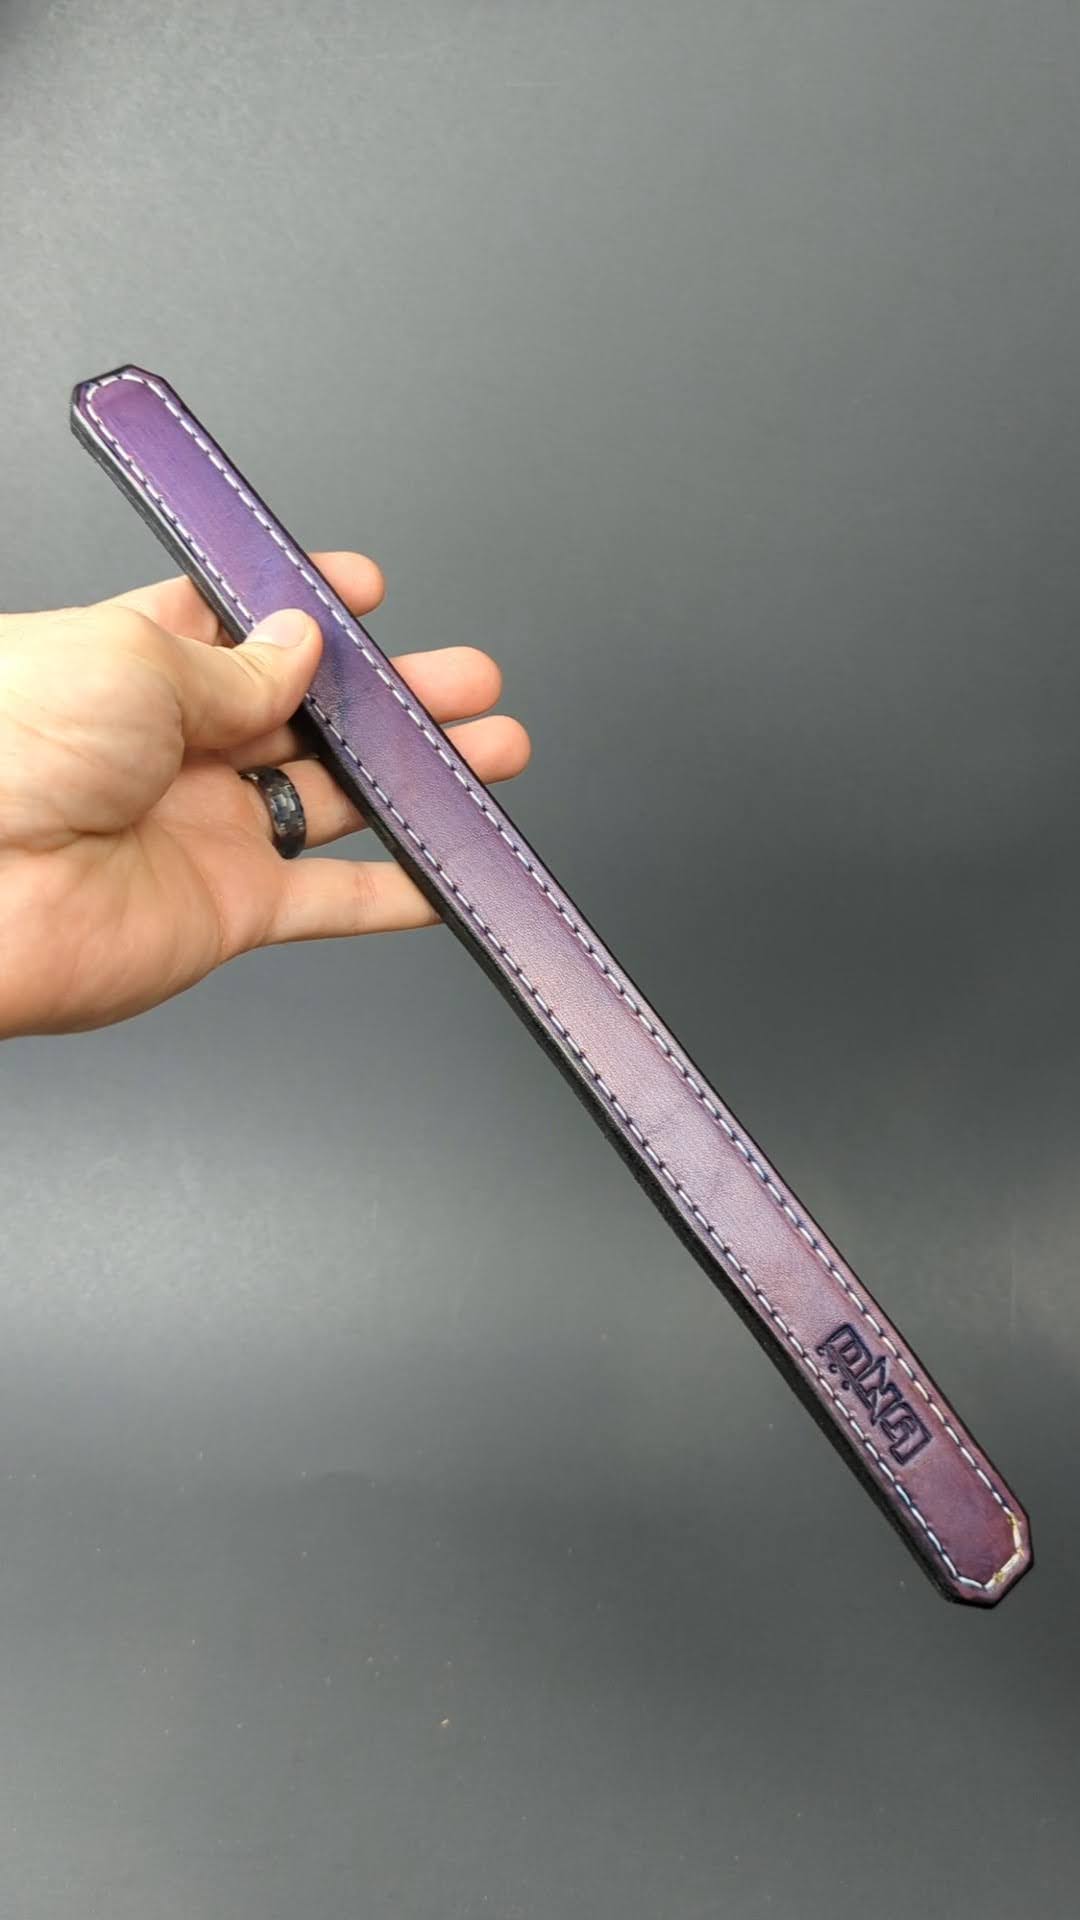 Small Purple Slap Stick Paddle